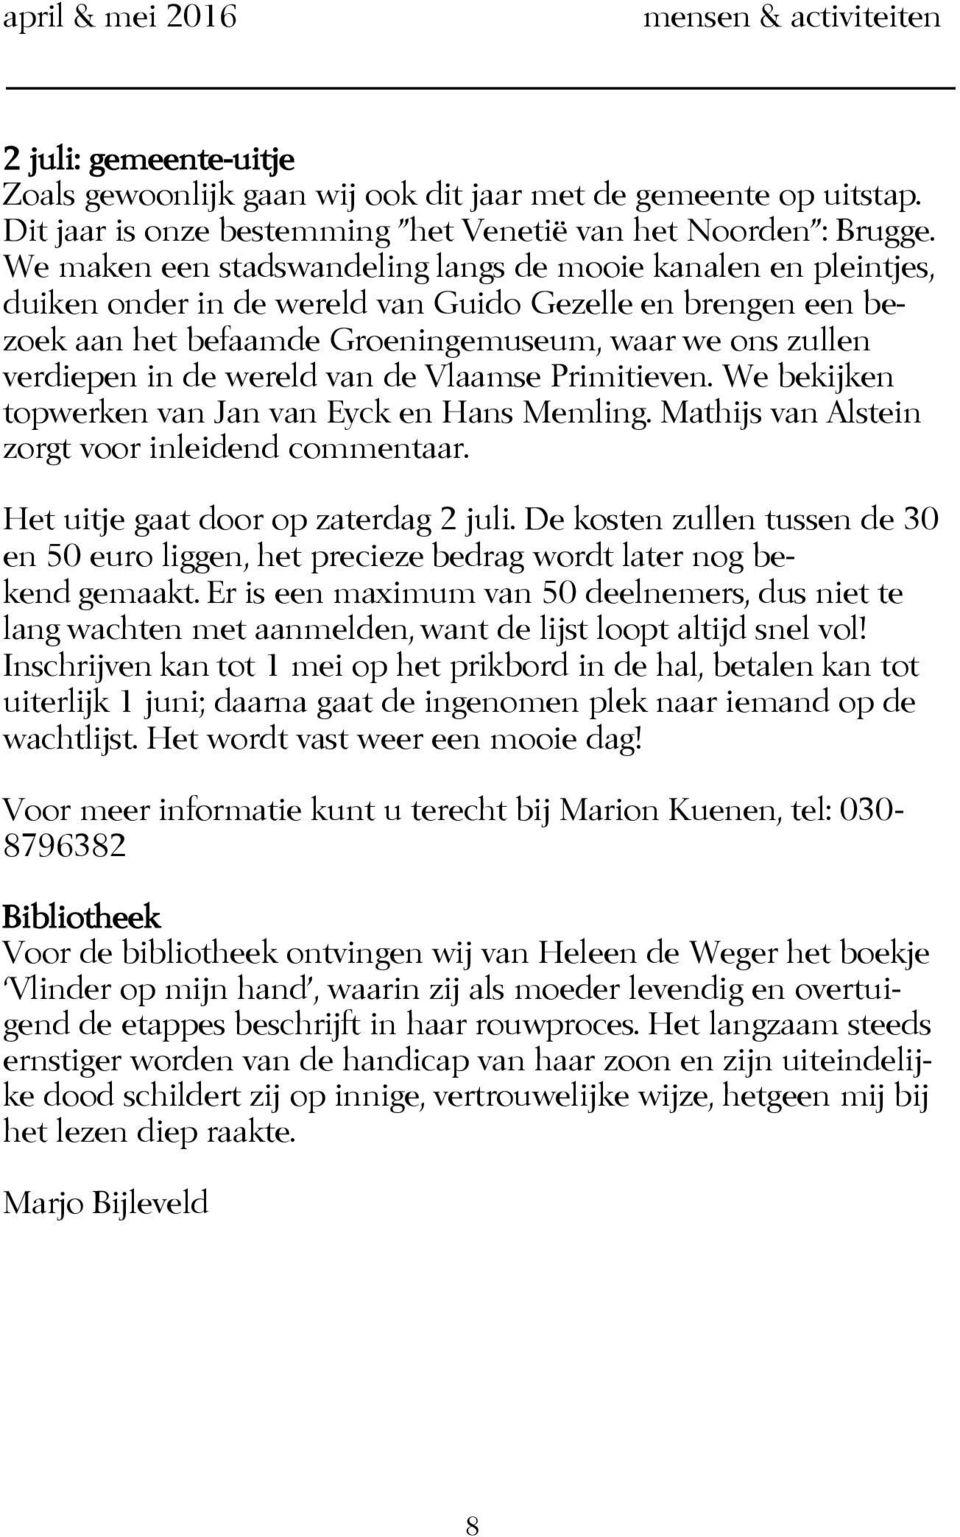 wereld van de Vlaamse Primitieven. We bekijken topwerken van Jan van Eyck en Hans Memling. Mathijs van Alstein zorgt voor inleidend commentaar. Het uitje gaat door op zaterdag 2 juli.